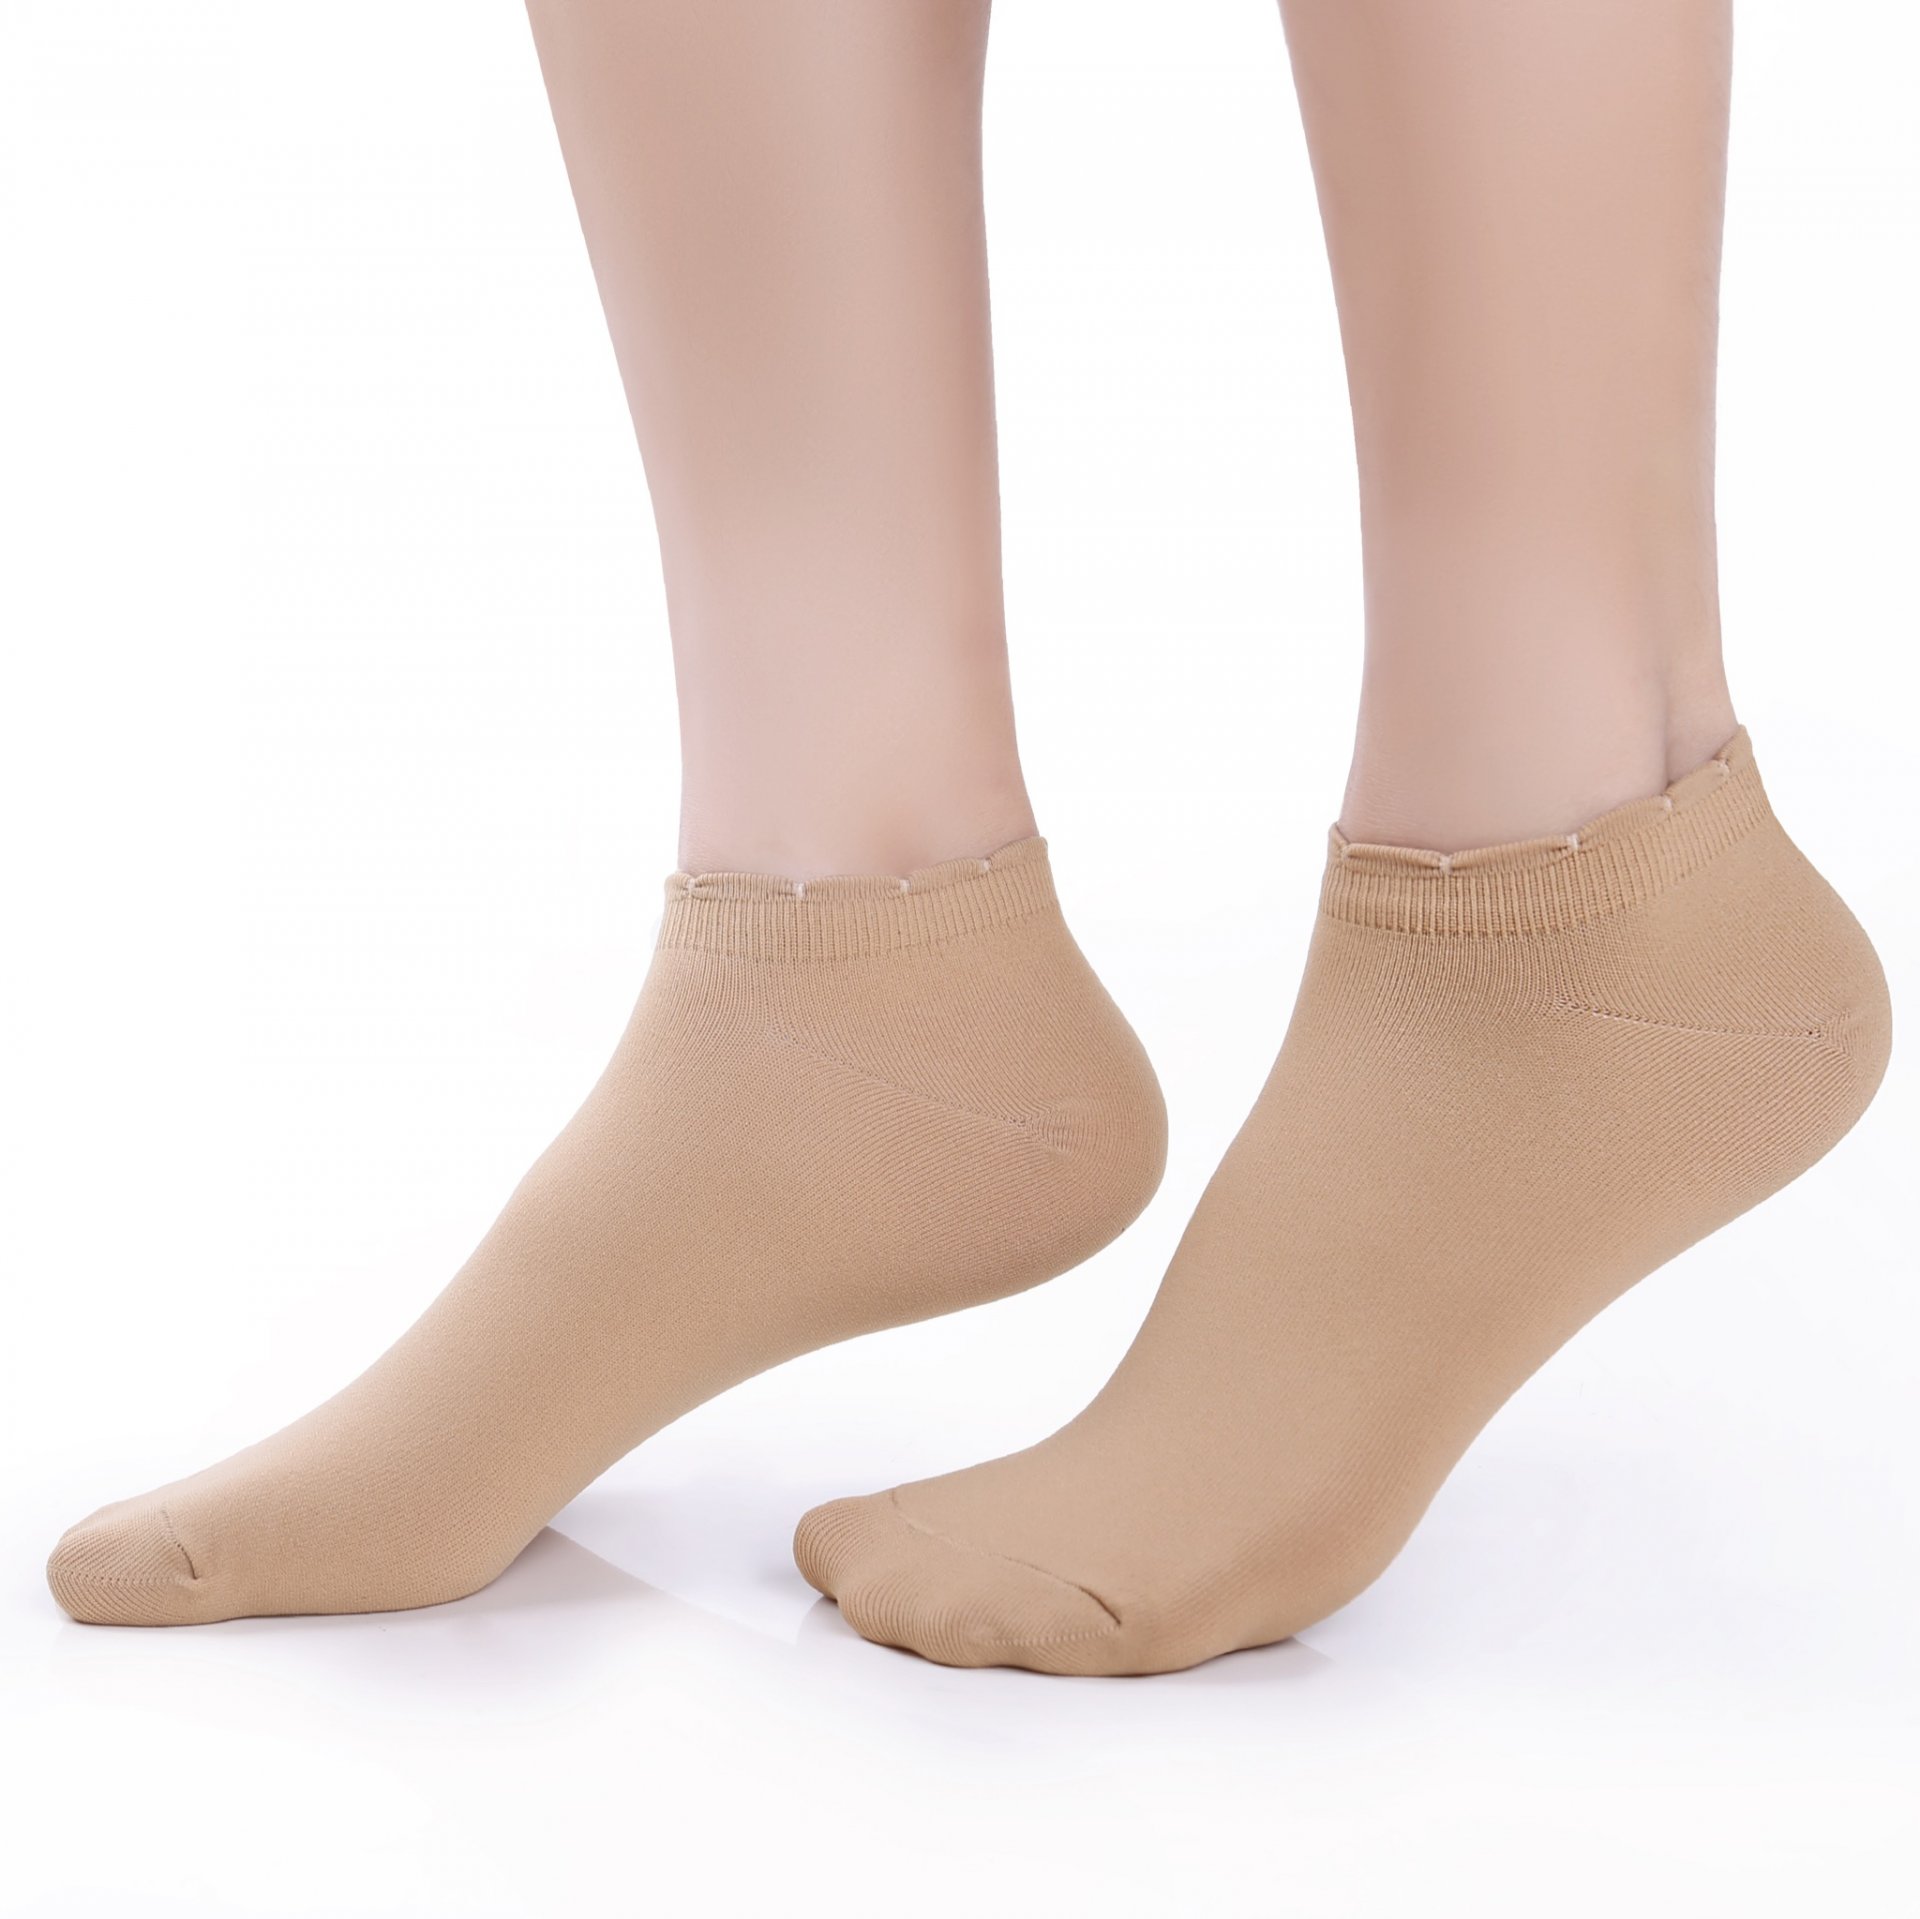 ถุงเท้ารองส้นเนื้อหนา ปิดหน้าเท้า สีเนื้อ รหัส NEFC04